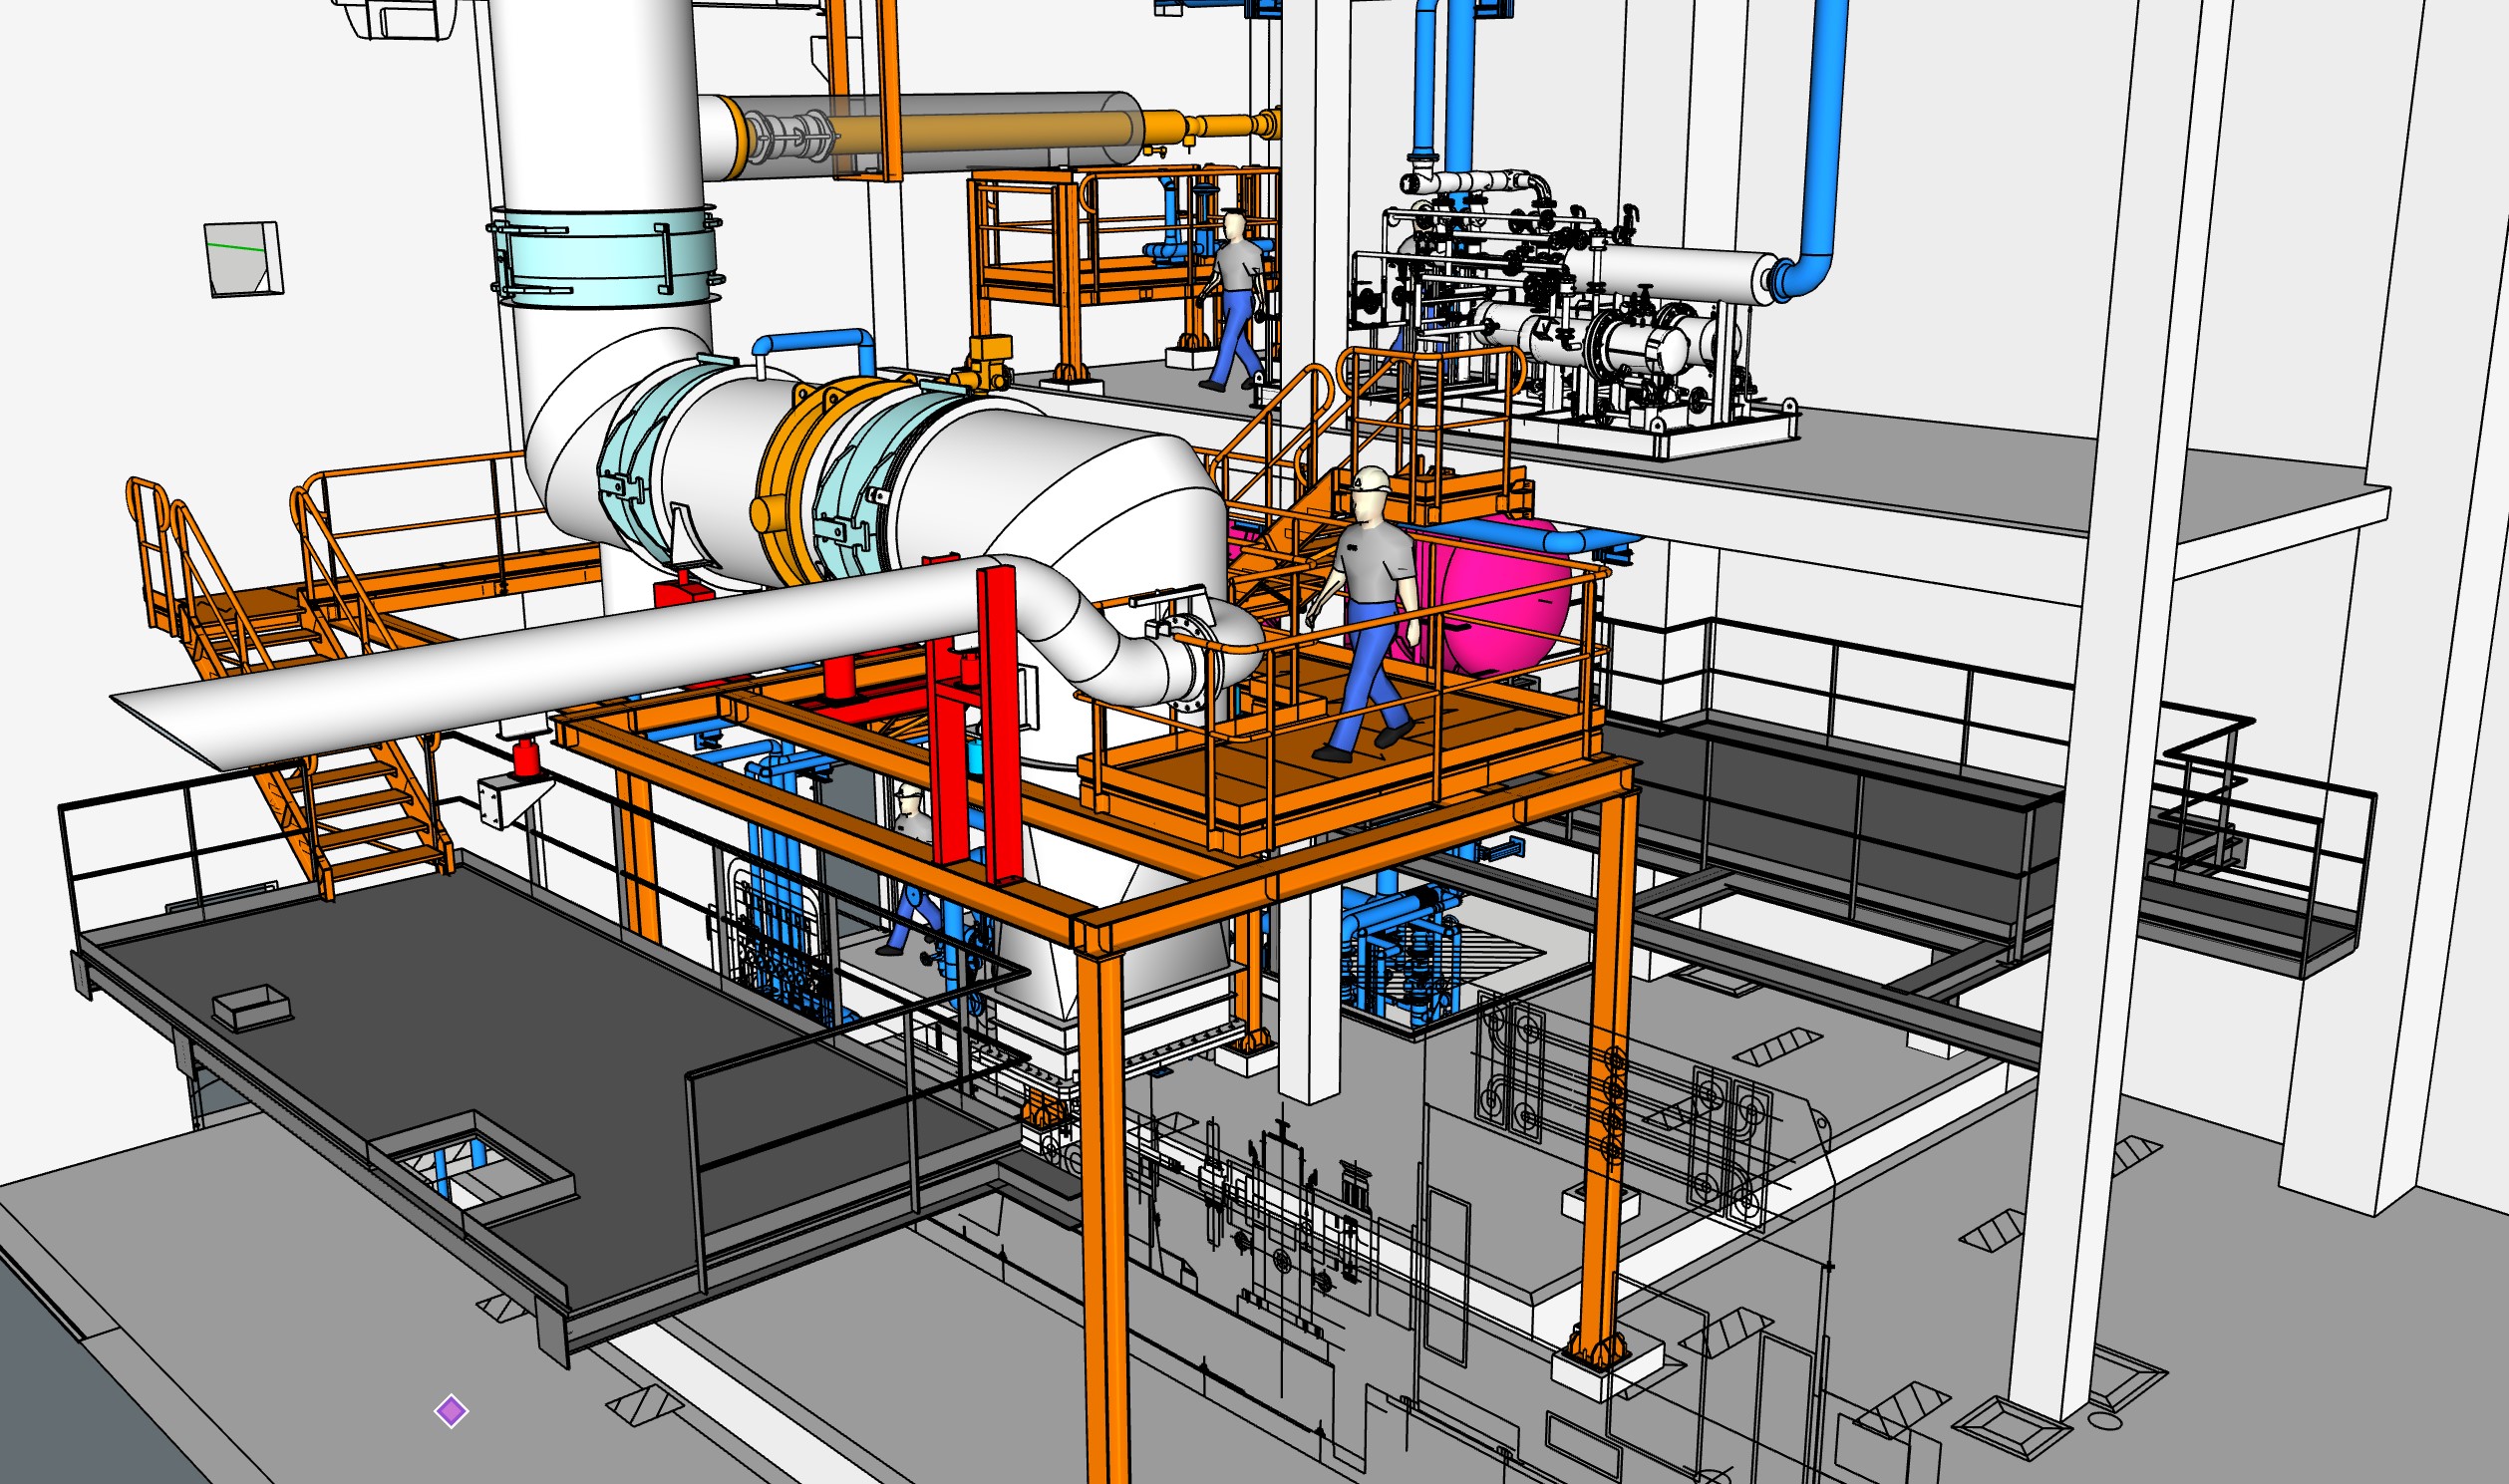 Progetto SketchUp di struttura di sostegno per un condotto industriale.